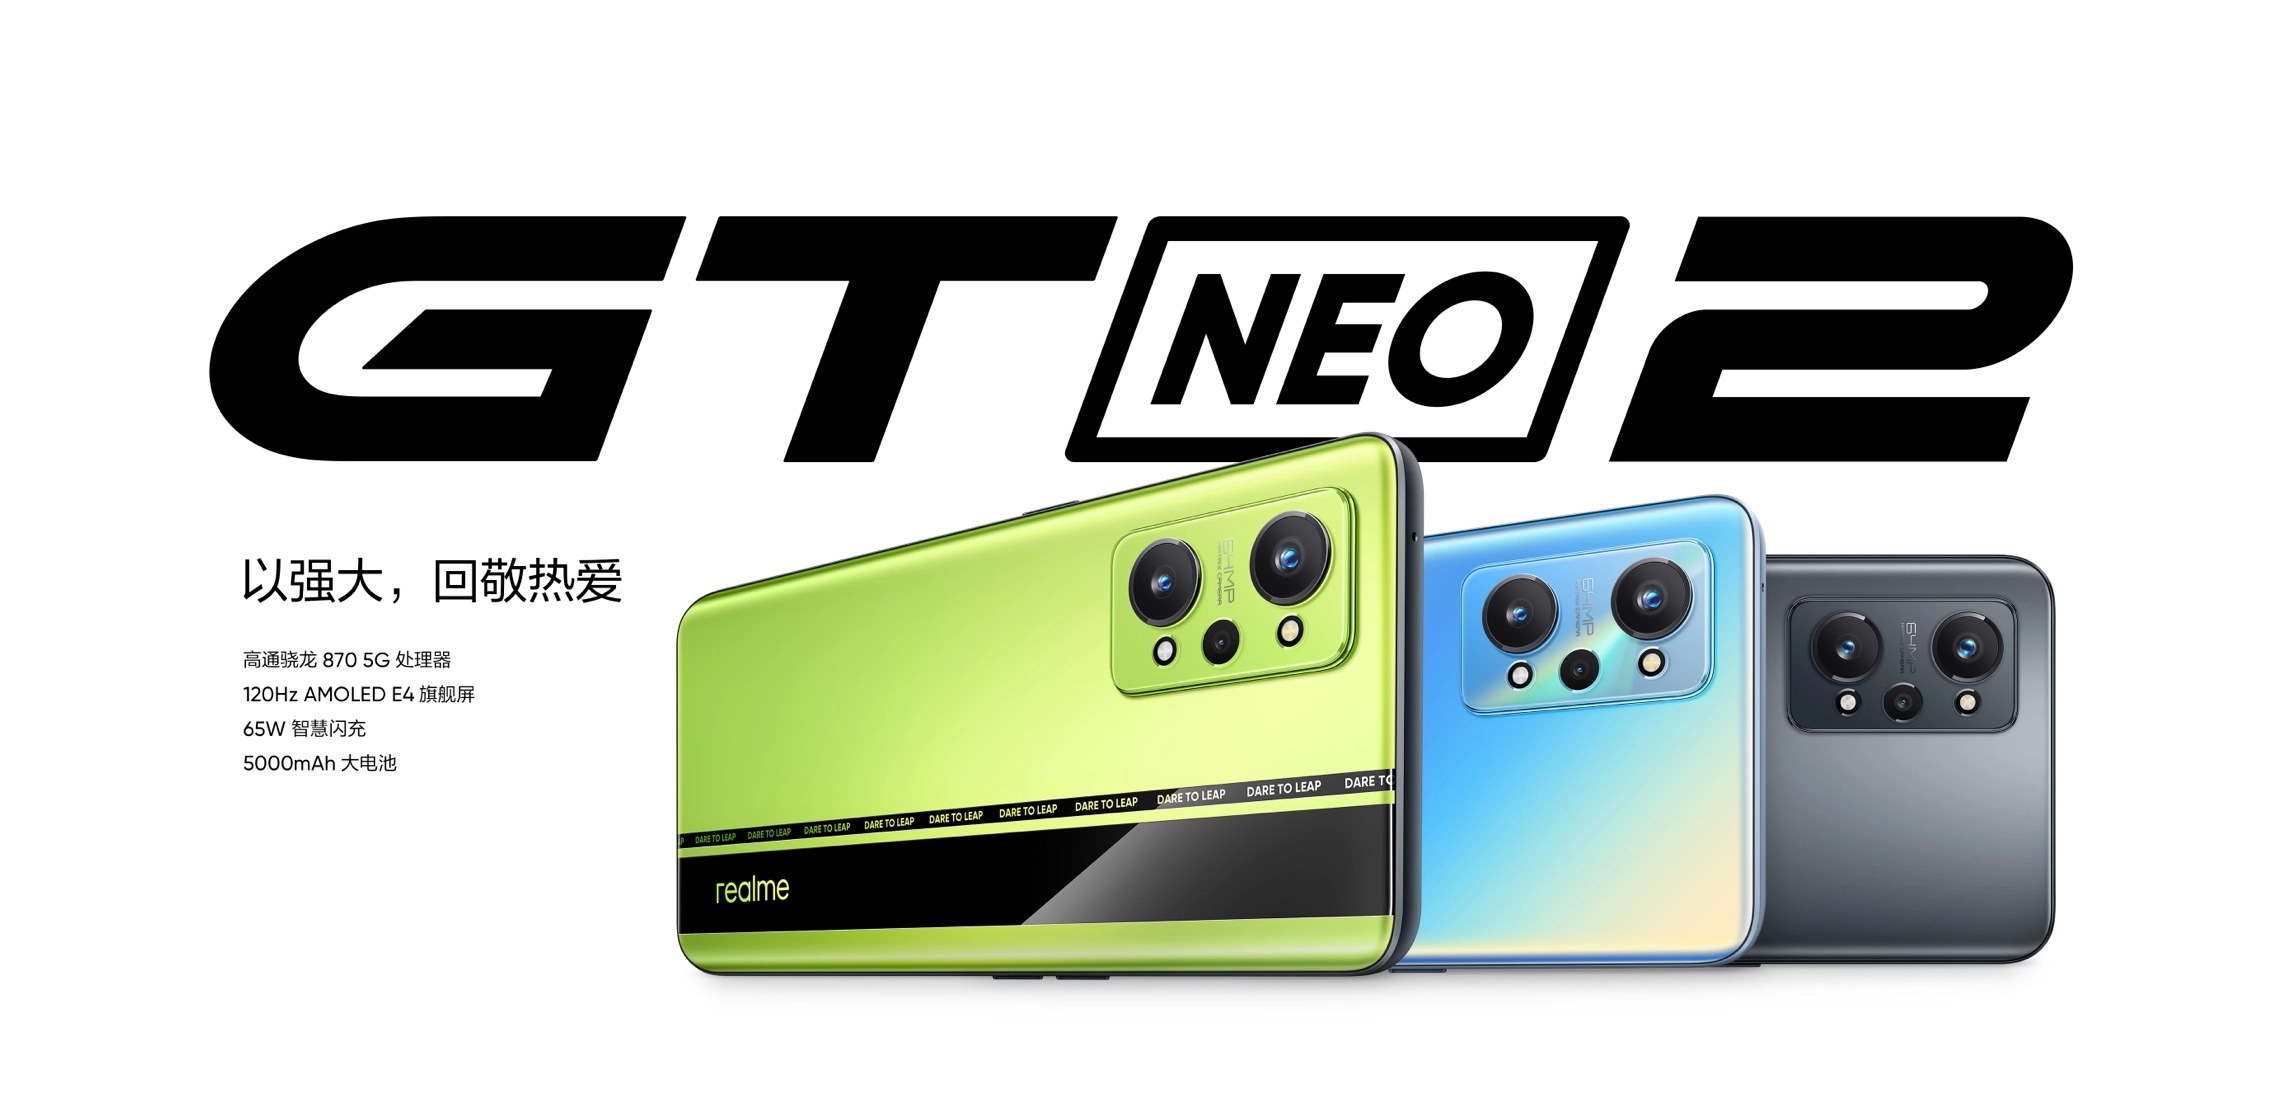 Realme GT Neo2 resmi meluncur di China hari ini